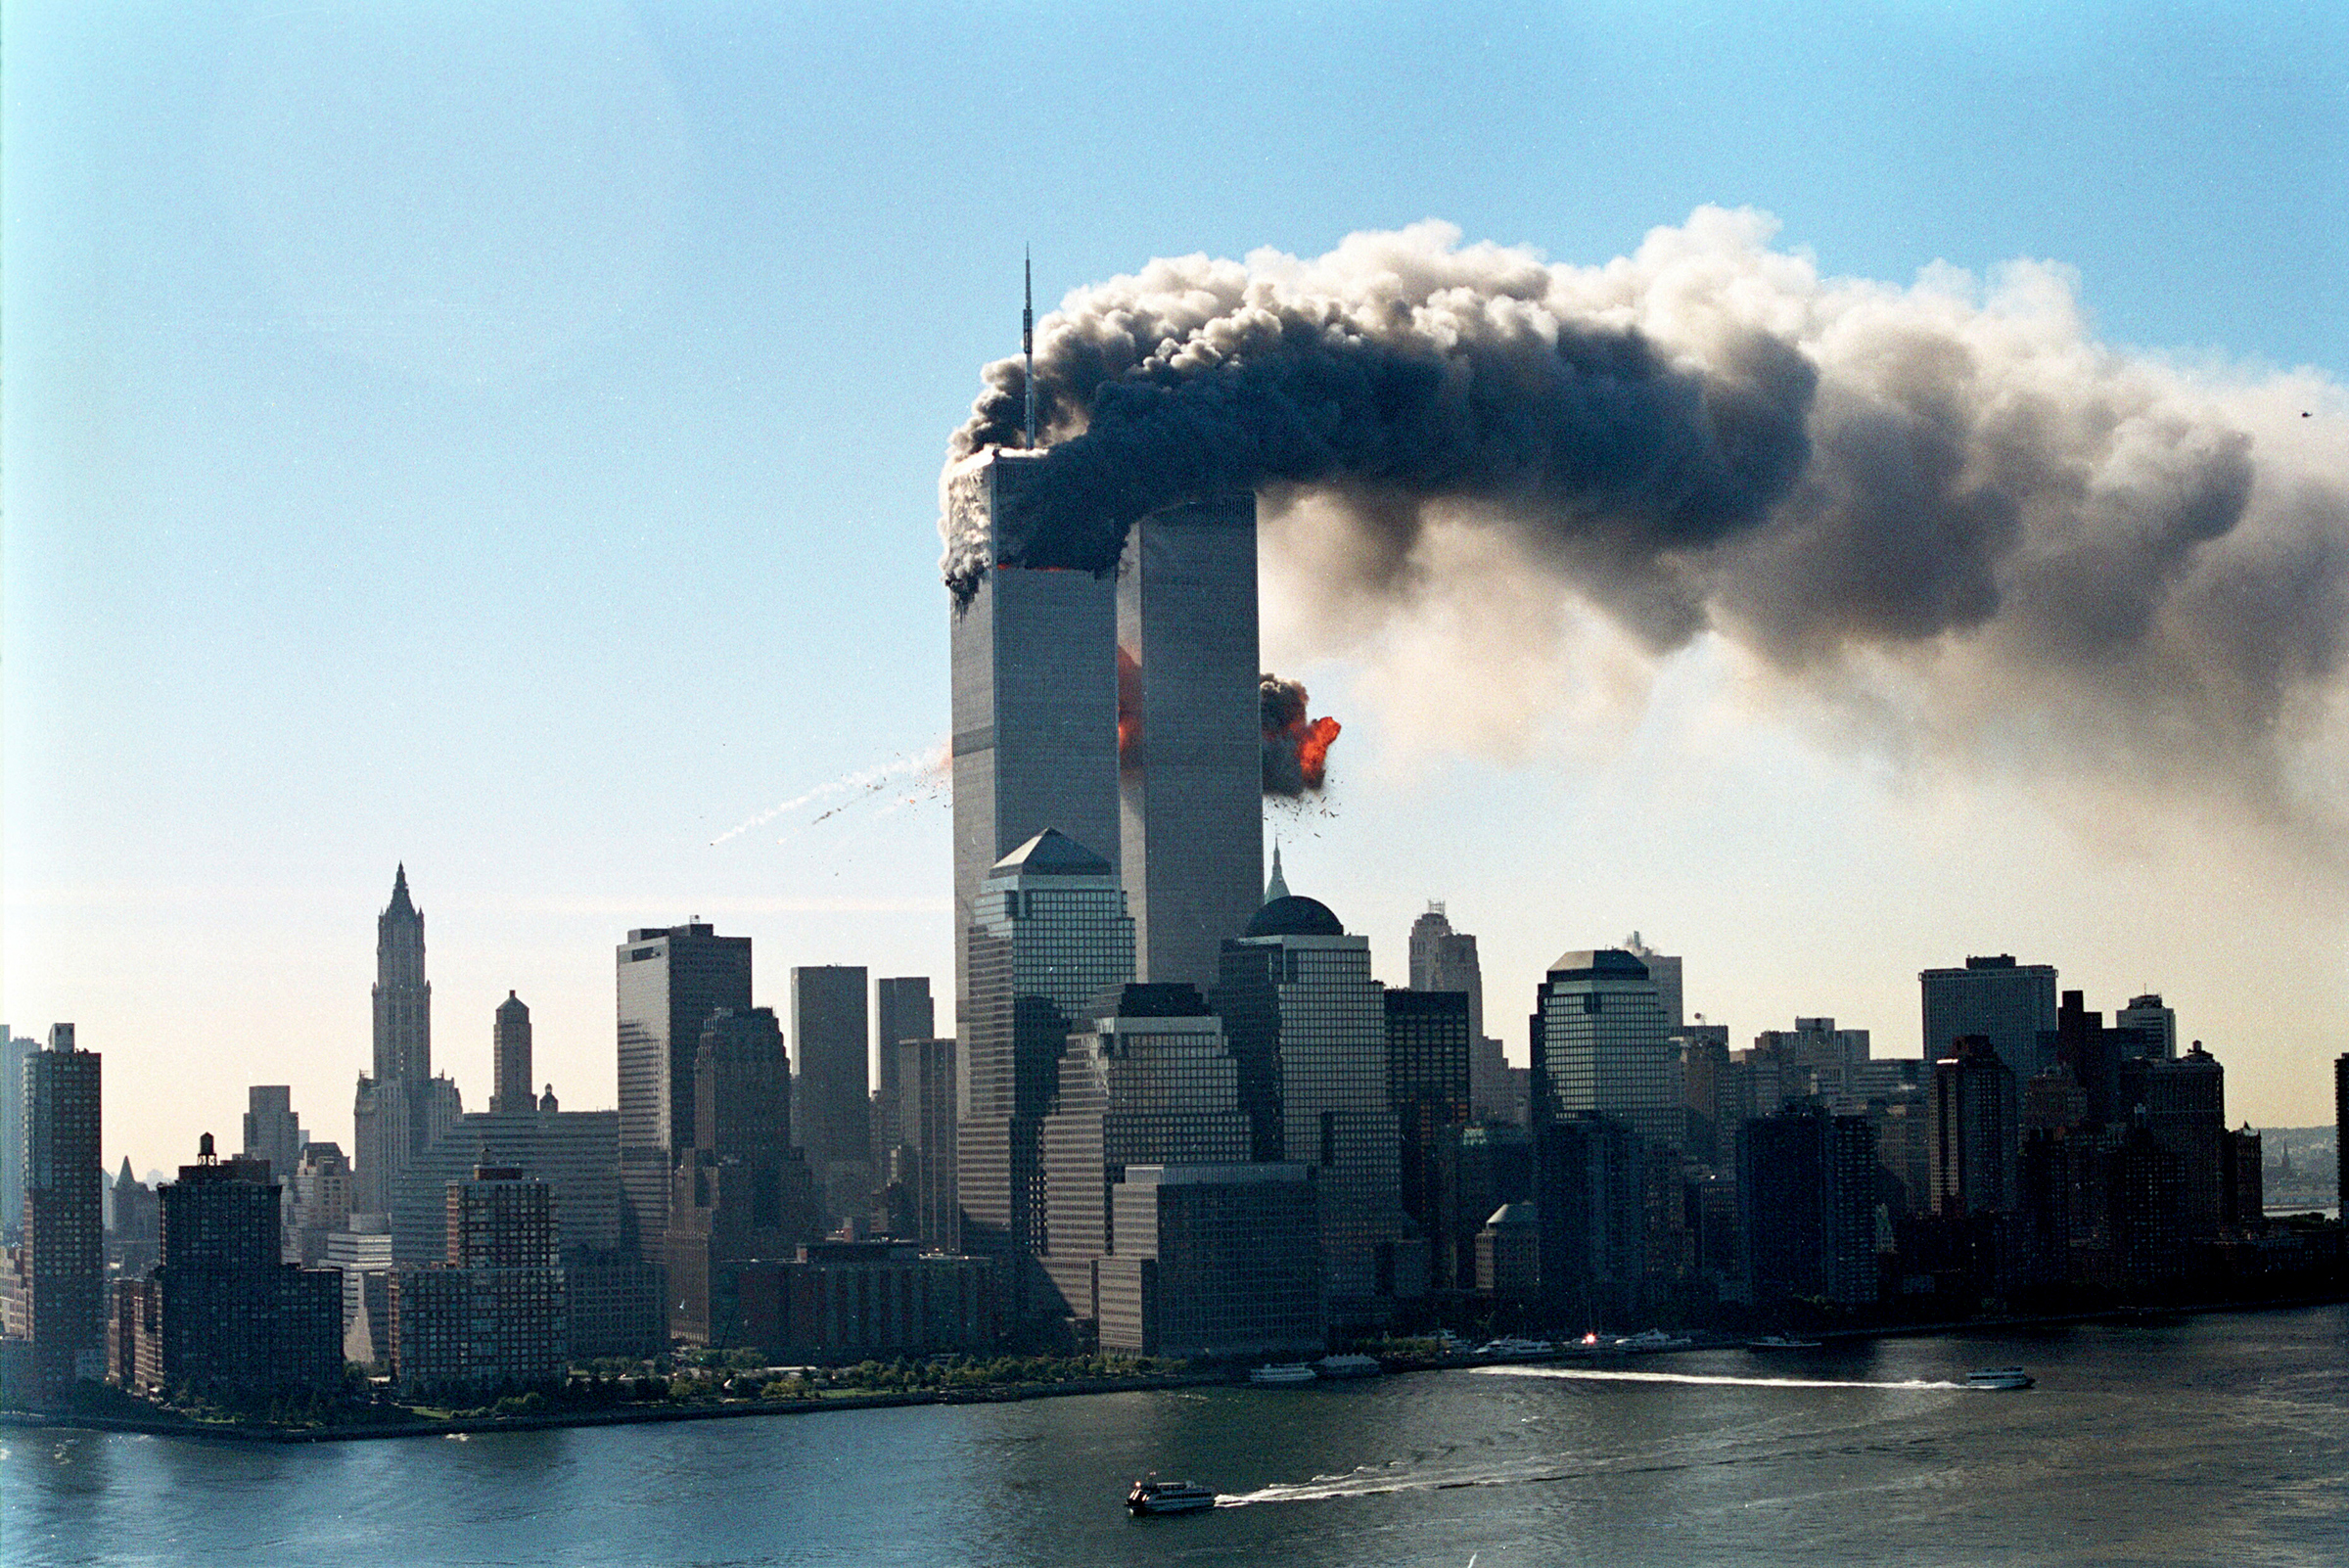 11 сентября 2001 года террористы, захватив два самолета авиакомпании American Airlines, направили их в Северную, а затем и Южную башню. Первый самолет врезался в Северную башню между 93-м и 99-м этажами, в результате&nbsp;в ловушке на верхних этажах оказались 1344 человека, которые не могли воспользоваться ни лифтами, ни эвакуационными выходами.

В Южной башне неповрежденным остался один из лестничных проемов, но воспользоваться им до обрушения&nbsp;смогли далеко не все. Южная башня рухнула в 9:59 утра, Северная &mdash; в 10:28. В результате теракта погибли 2752 человека &mdash; 200 из них выбросились из окон. Из-под завалов живыми были извлечены 20 человек.

Через несколько лет после катастрофы стали появляться многочисленные сообщения о смертях тех, кто работал над ликвидацией последствий теракта и тех, кто спасся из башен, но был вынужден вдохнуть большое количество пыли, образовавшейся после падения. Смерти в этих случаях были связаны с болезнями легких и онкологическими заболеваниями.
